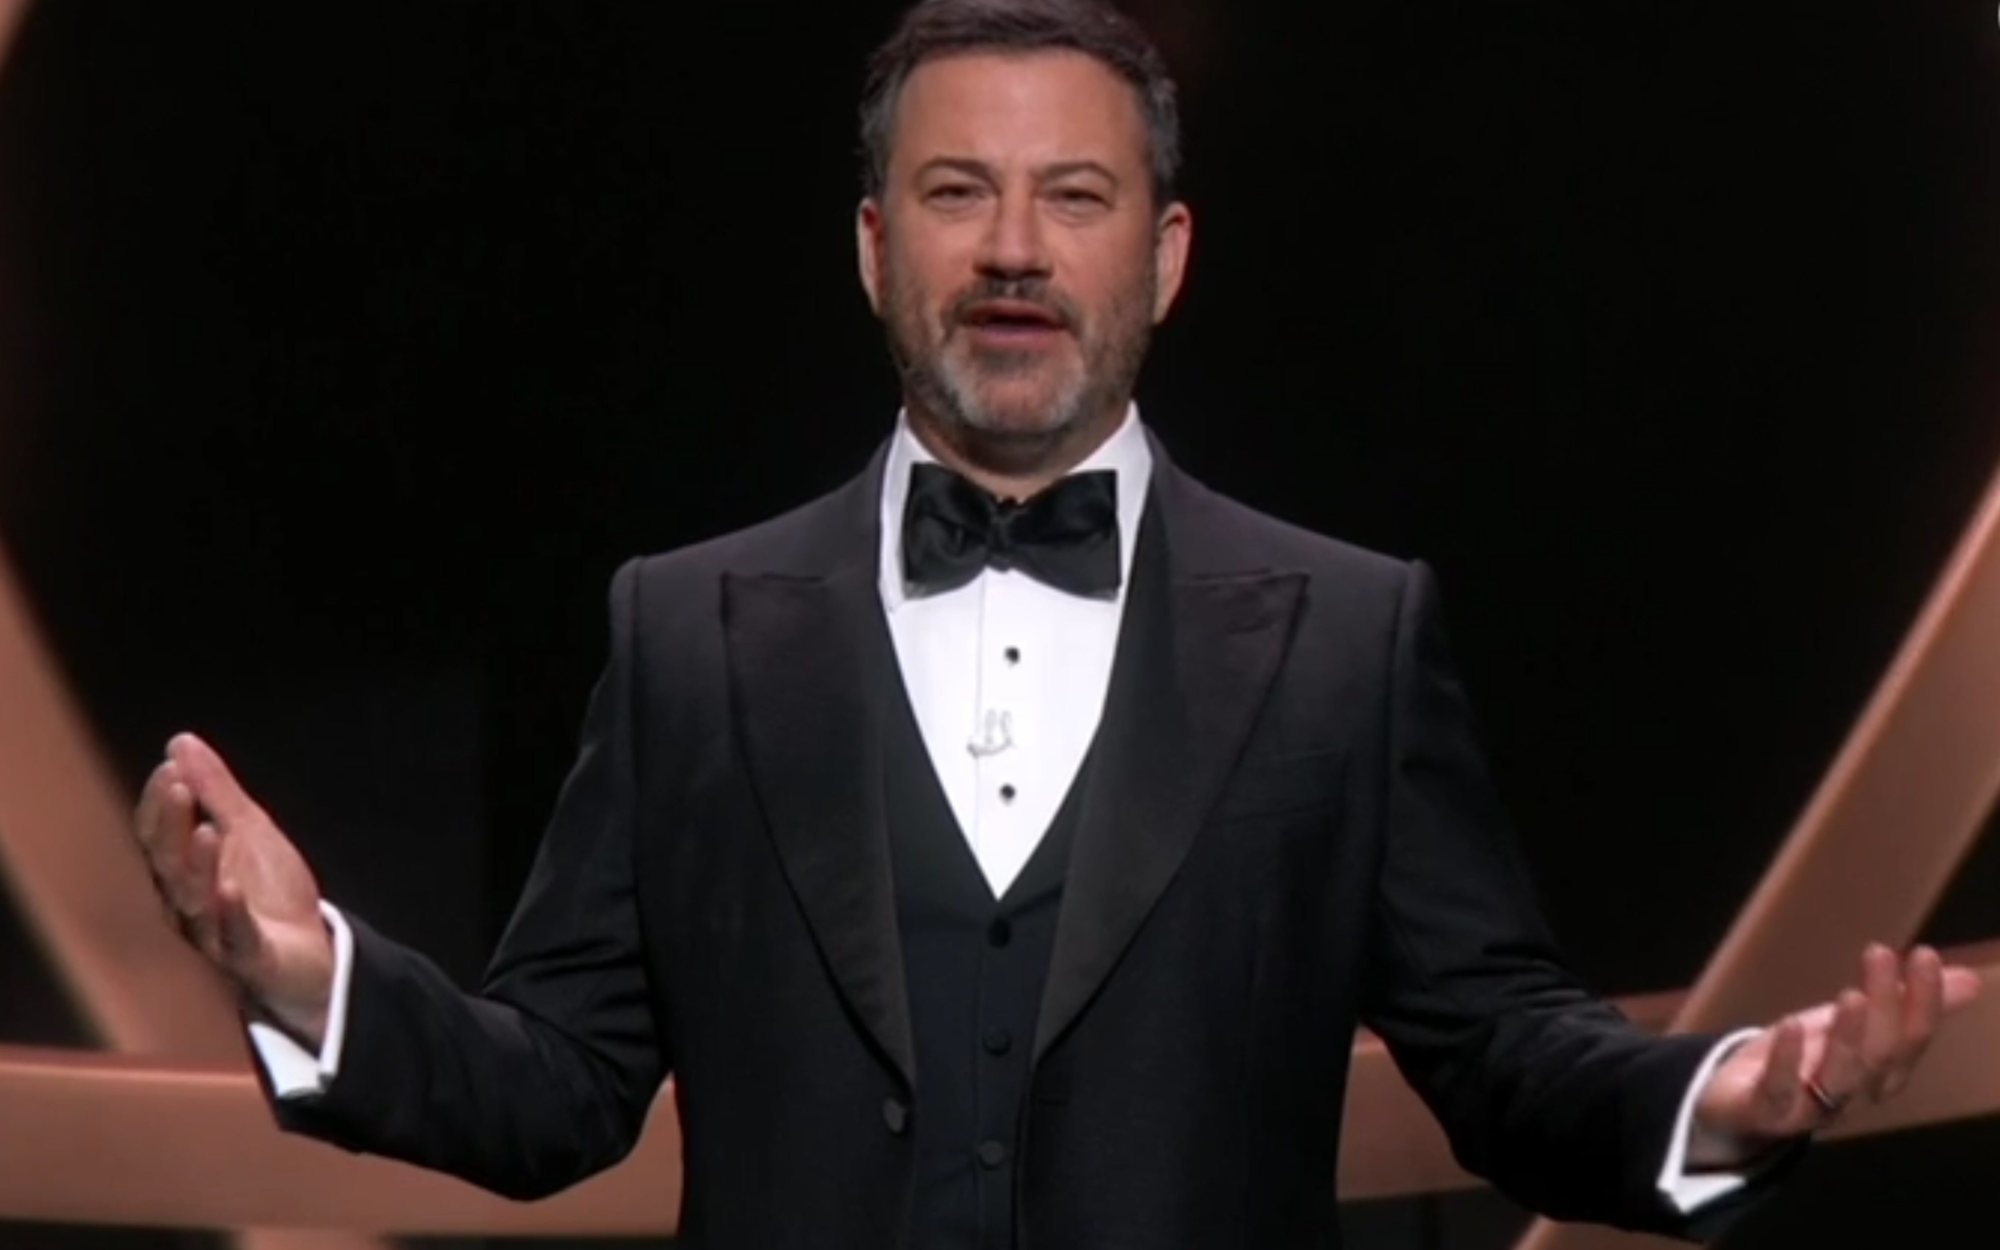 Emmy 2020: La gala más atípica marcada por el coronavirus, pero con Jimmy Kimmel de sobresaliente